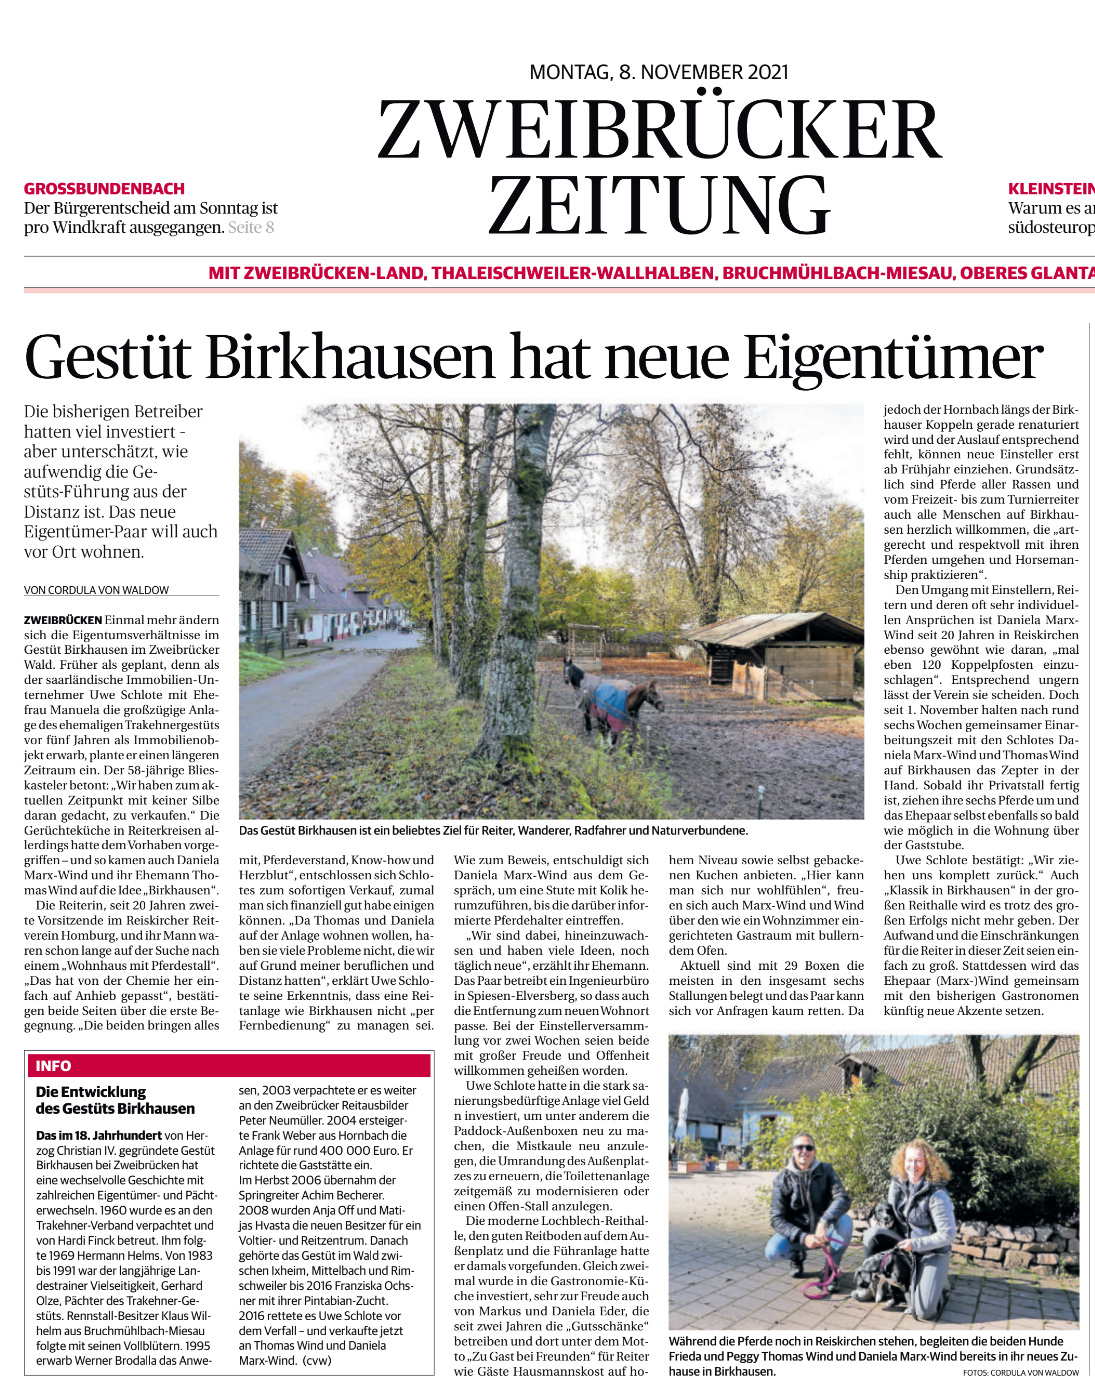 Gestüt-Birkhausen_Reitanlage_Zweibrücken_Service_über-uns_Reithof_Zweibrücker-Zeitung